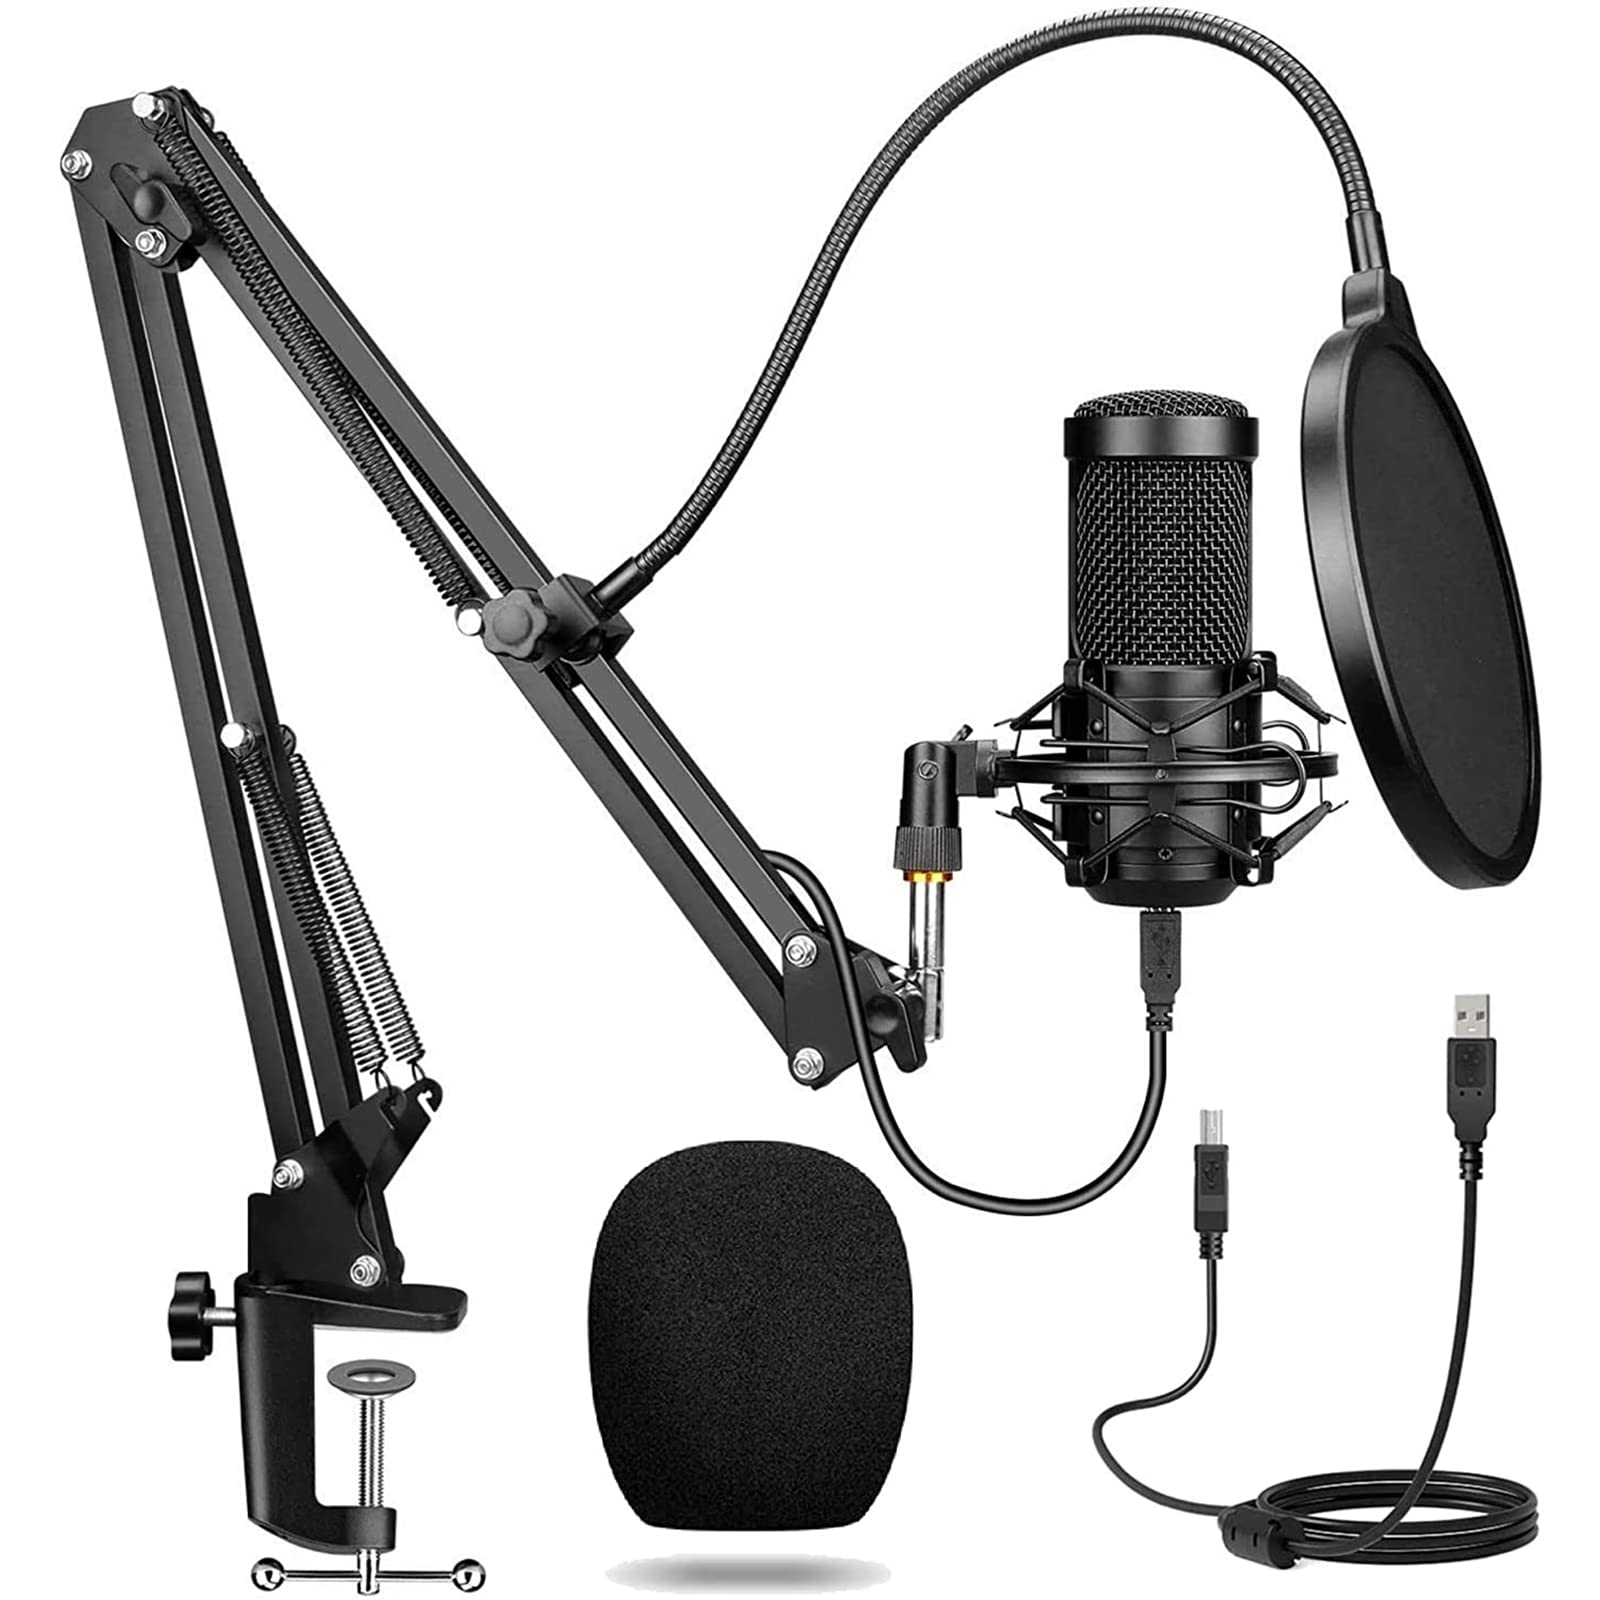 Classique Enocos Studio Microphone cardioïde à condensateur pour jeux, streaming, podcasts, YouTube, enregistrement 5MKcU1t1b boutique en ligne